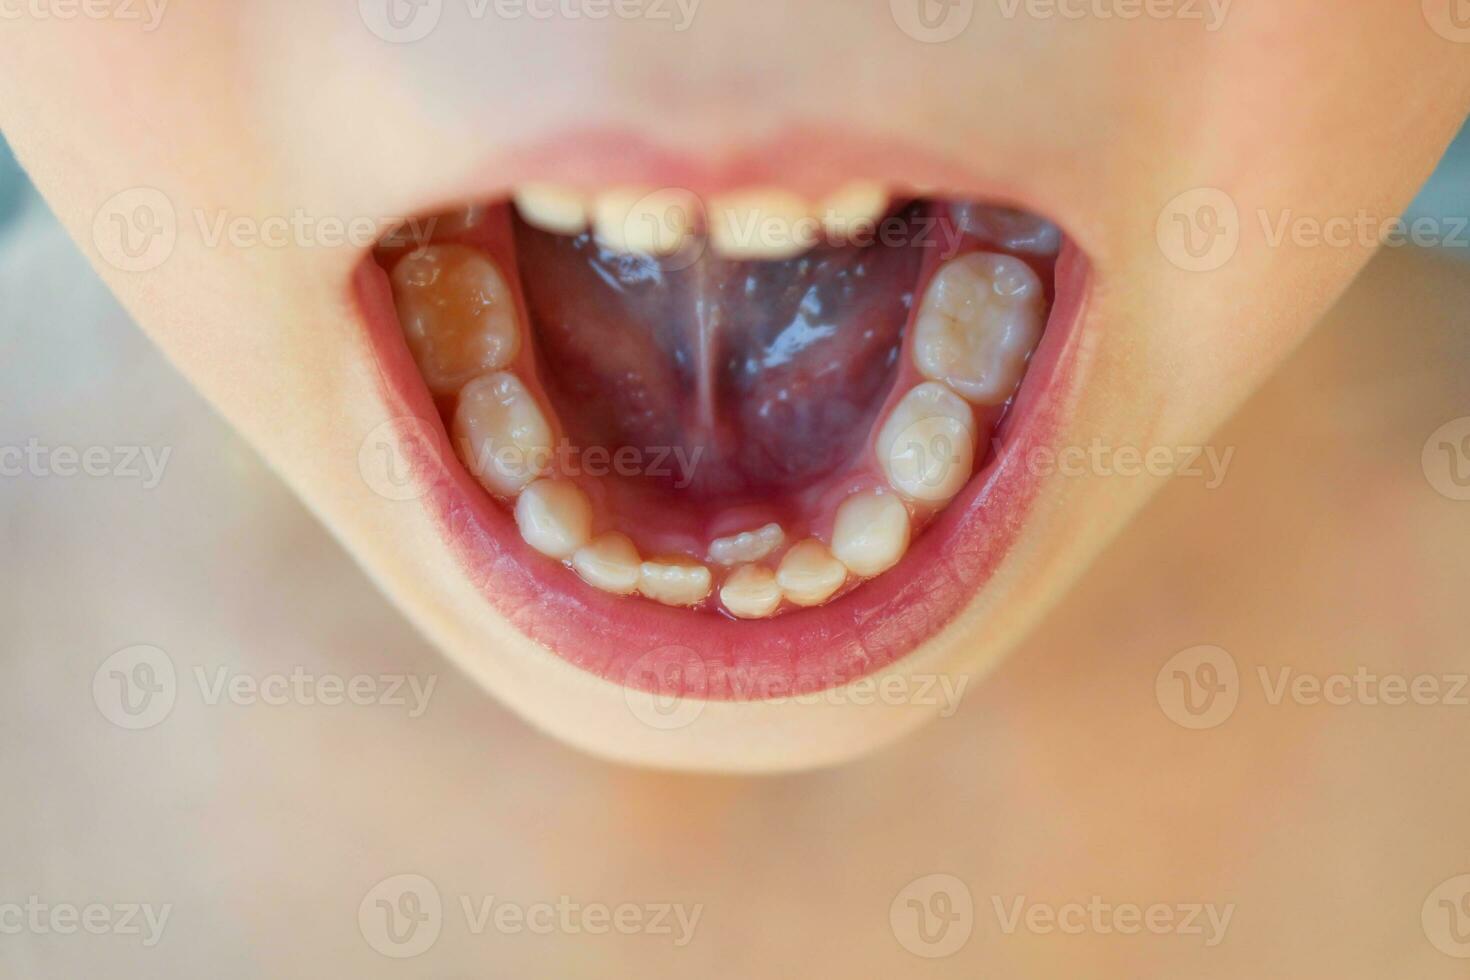 bébé dent est encore ne pas abandonné, le suivant grandi racine dent photo